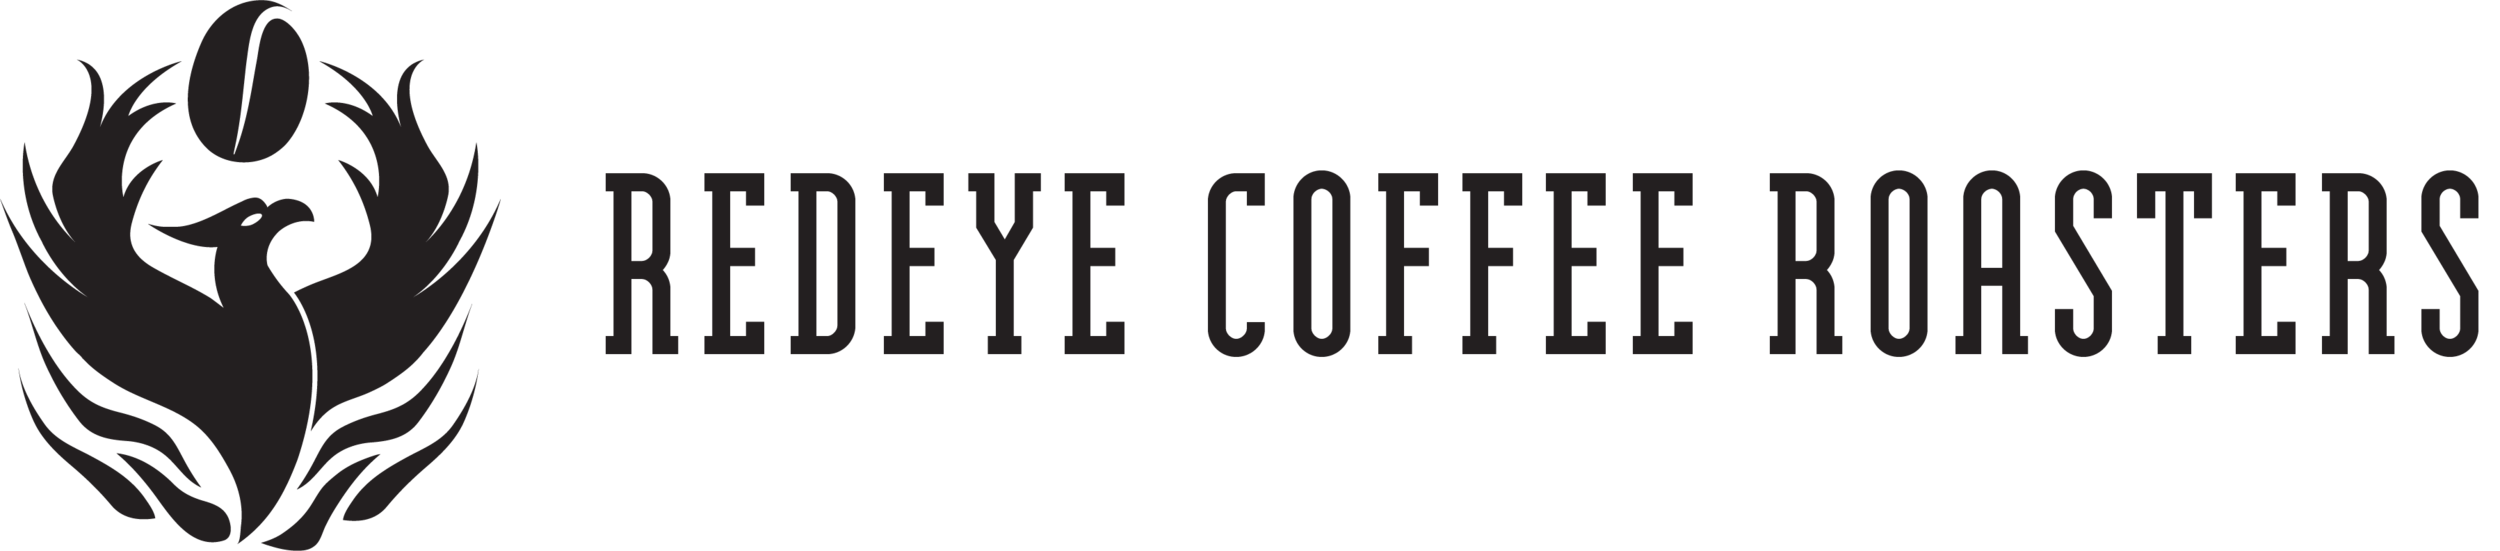 Redeye Coffee Roasters